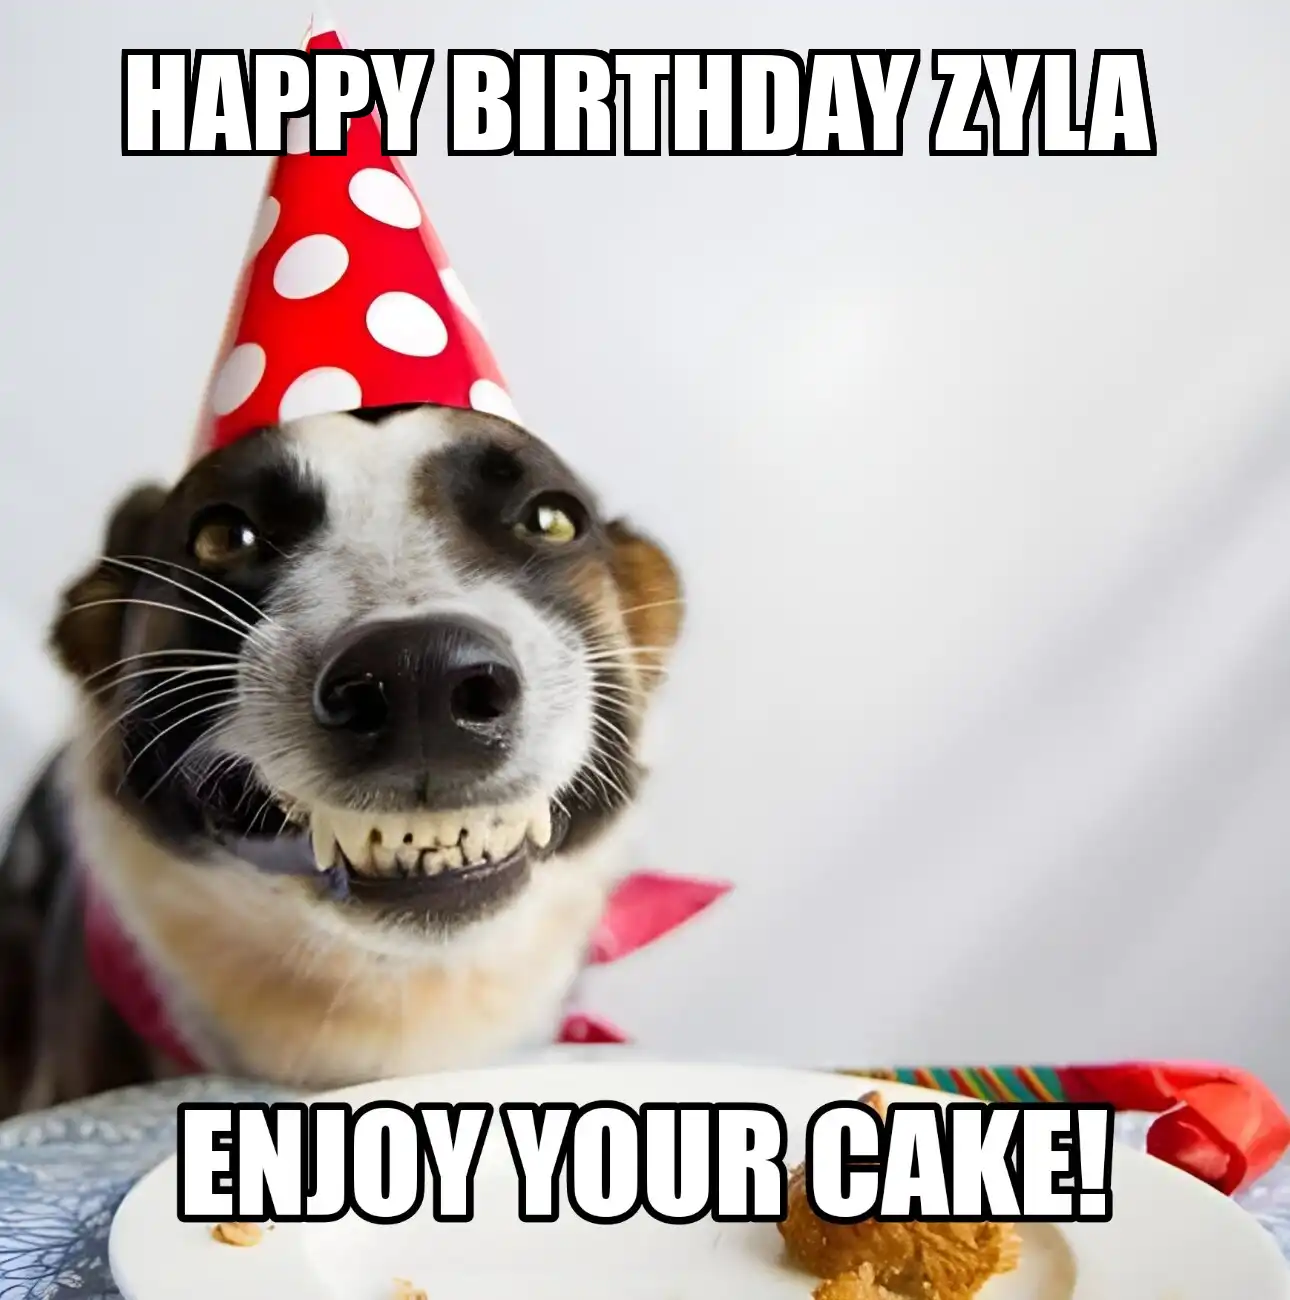 Happy Birthday Zyla Enjoy Your Cake Dog Meme